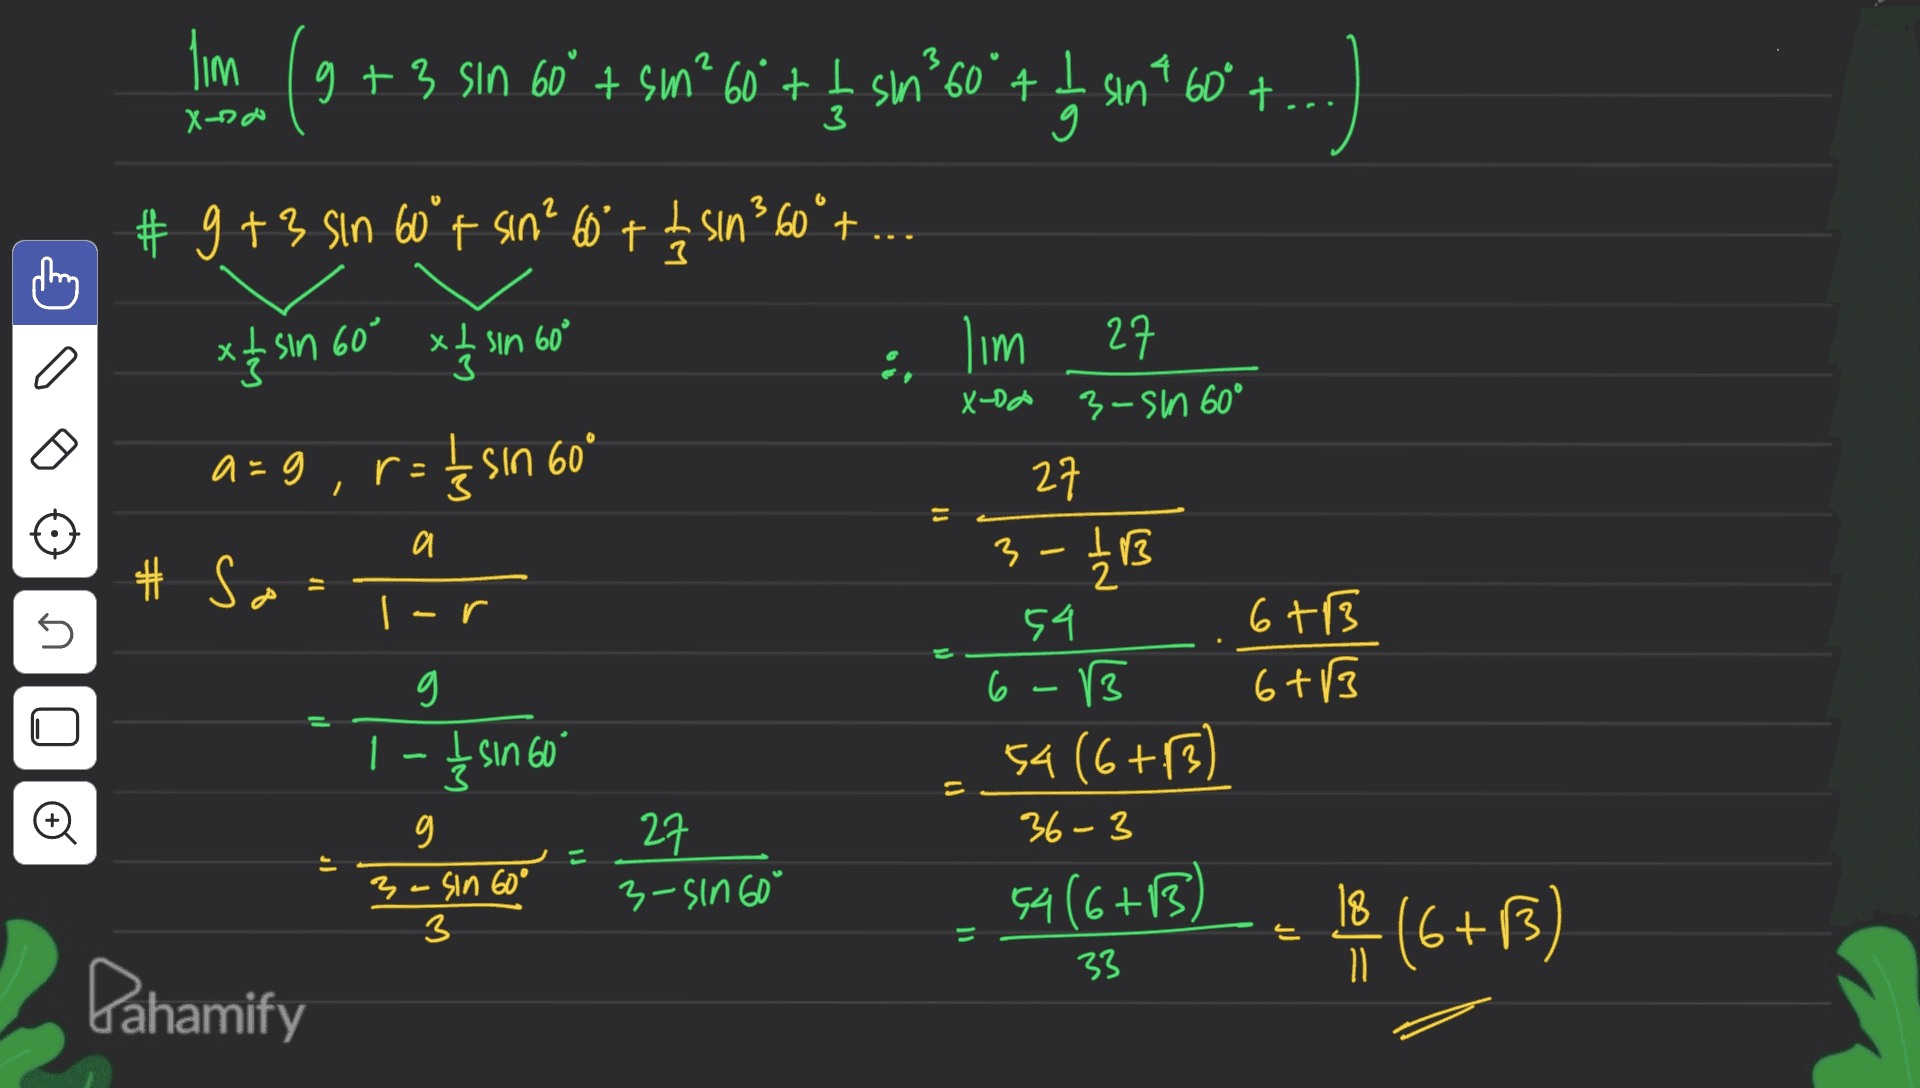 lim (+9 us ft. 09. uas +.99 ,us +, og vis +6 09 & I X-do + 3 # g +3 sin 60°t sin² 60° + b sin360°t x & sin 60' x1 in bo xt . xlsin 60° a lim 27 X-DA 3-sin 60° 27 a=9 ri = į sin 60° I 3 a # So 3-2 EXT = s 6 +3 6+13 1 - Įsin 60 54 6 (3 54 (6+13) 36-3 54 (6+13) + ܘܗܼܲ 27 3-sin 60" 3-sin 60° 3 15 (6+B) 6 33 Pahamify 